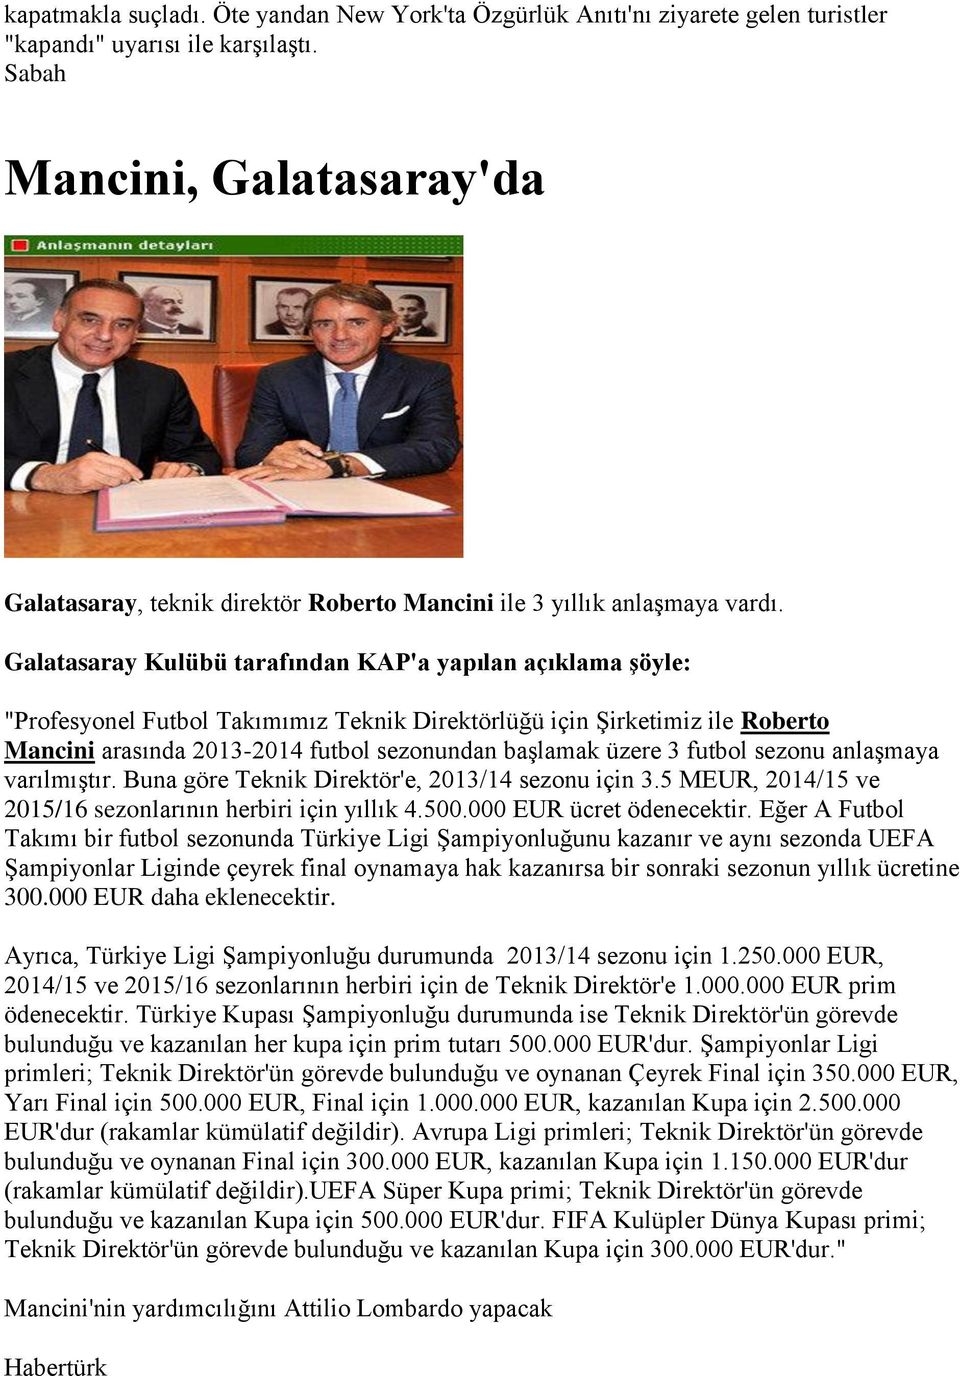 Galatasaray Kulübü tarafından KAP'a yapılan açıklama şöyle: "Profesyonel Futbol Takımımız Teknik Direktörlüğü için Şirketimiz ile Roberto Mancini arasında 2013-2014 futbol sezonundan başlamak üzere 3